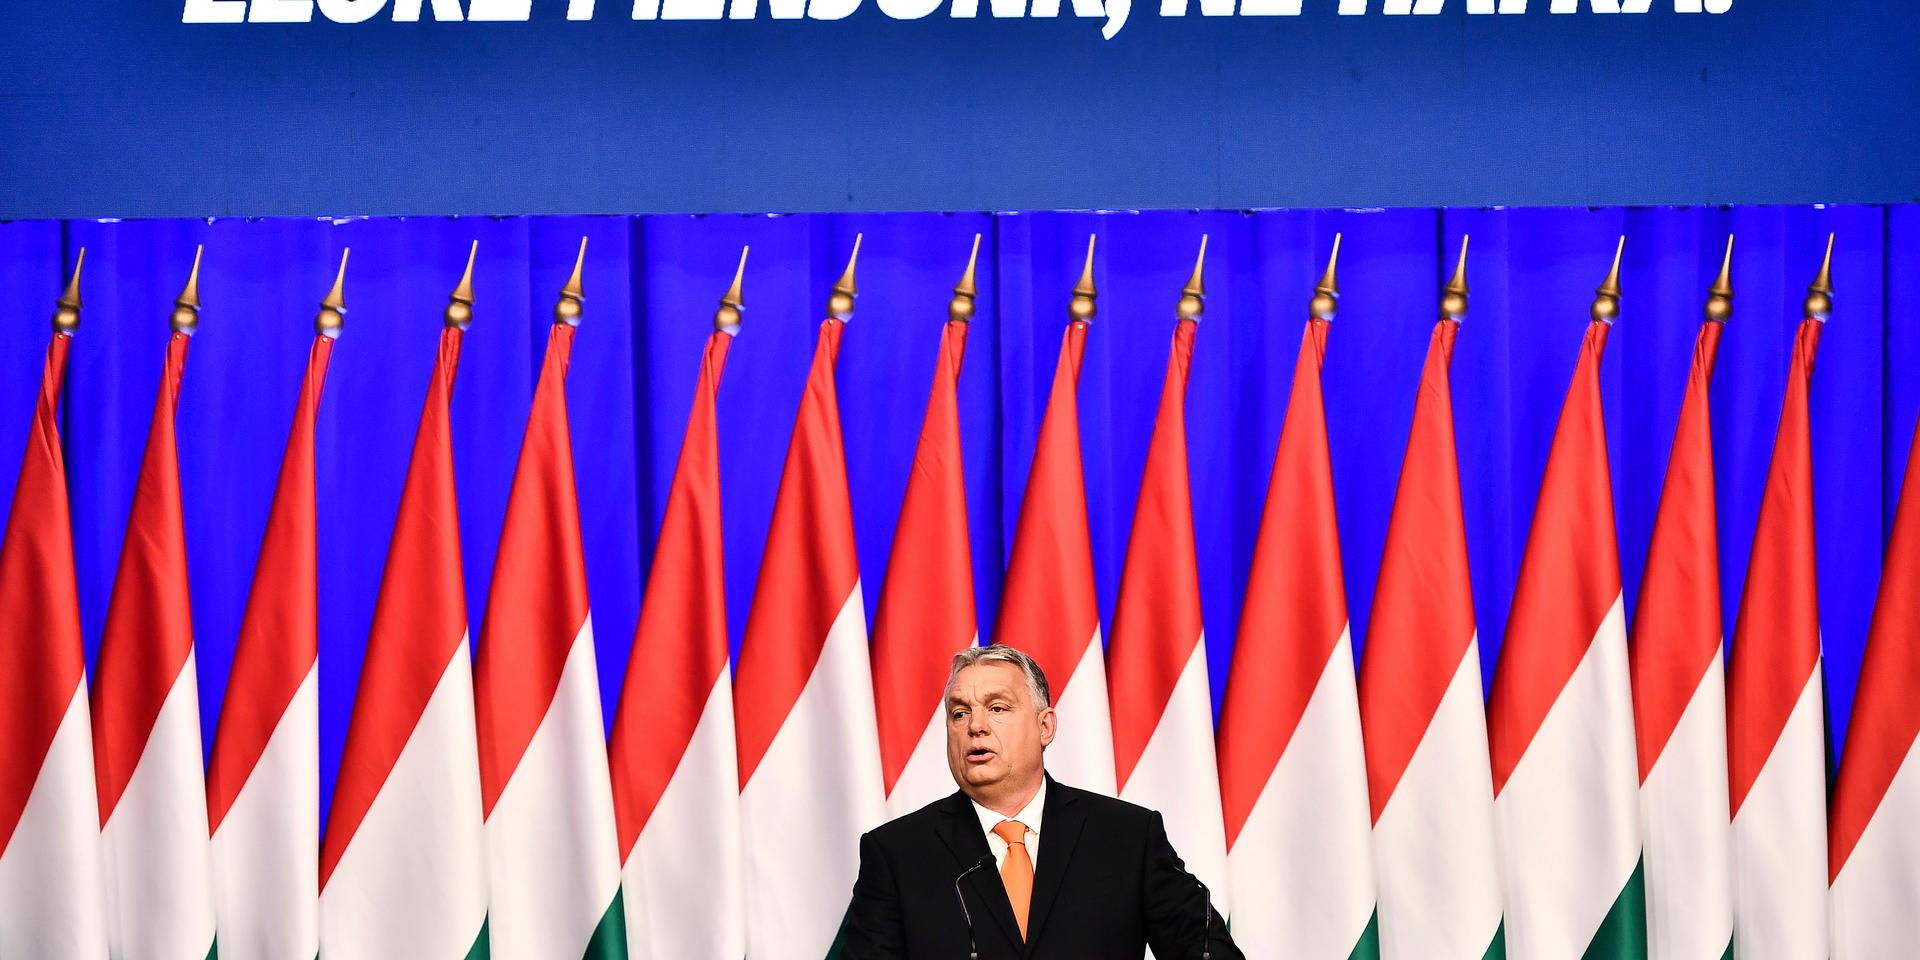 Kampanjar. Ungerns premiärminister Viktor Orbán ska i vår försöka vinna ytterligare ett val, denna gång mot en samlad ungersk opposition. ”Låt oss gå framåt, inte bakåt” lyder parollen. 